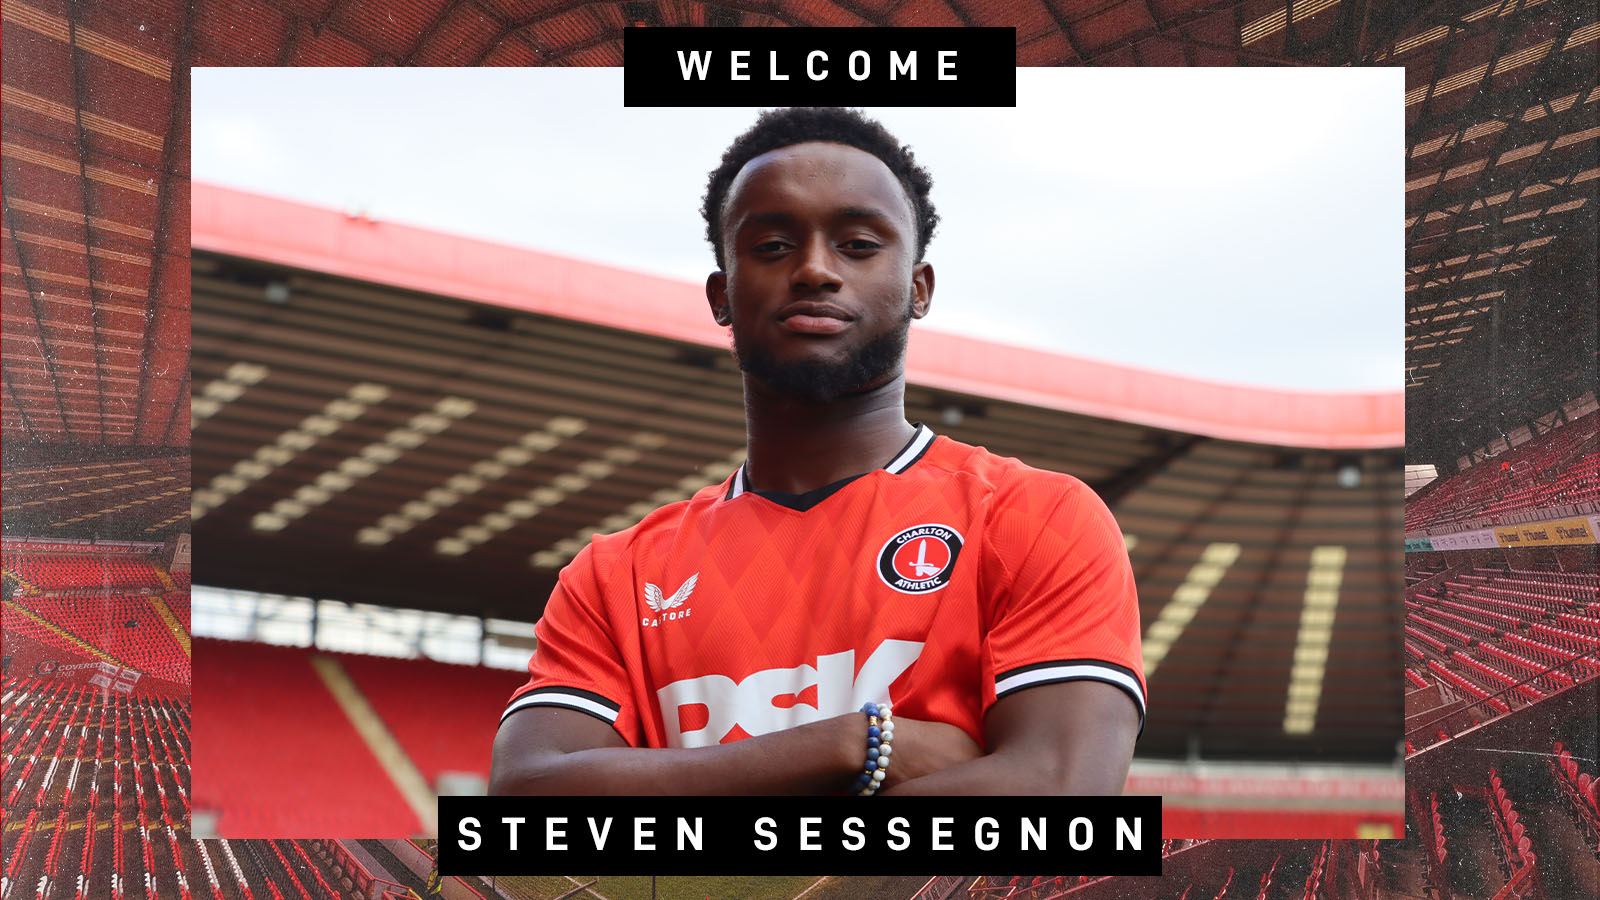 Steven Sessegnon signs